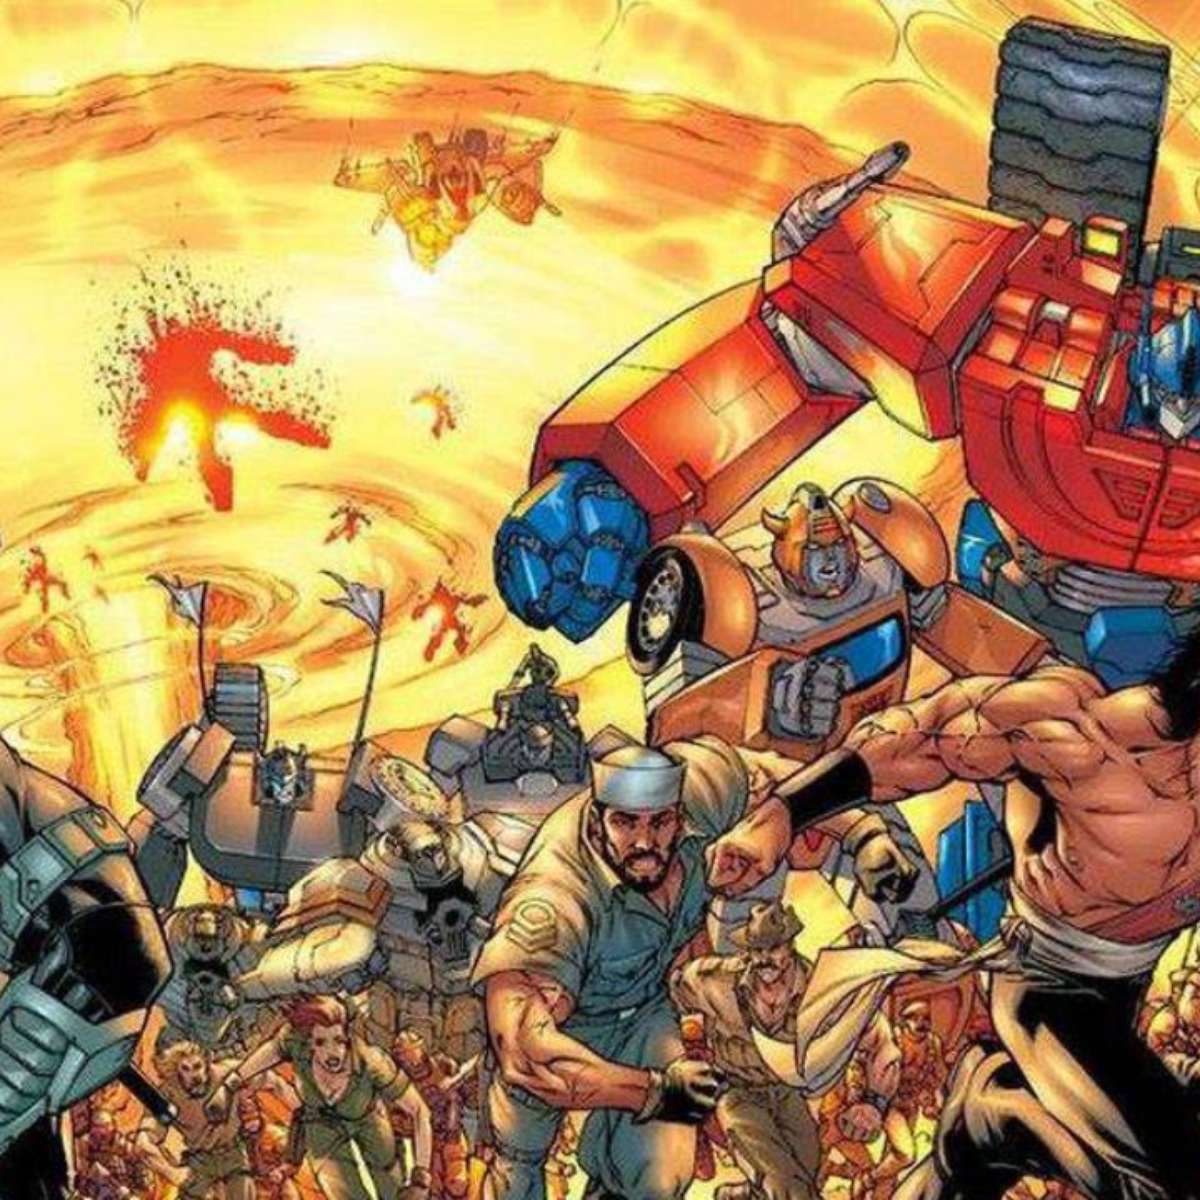 Transformers: O Despertar das Feras tem relação com os filmes de Michael  Bay? Entenda a cronologia da franquia